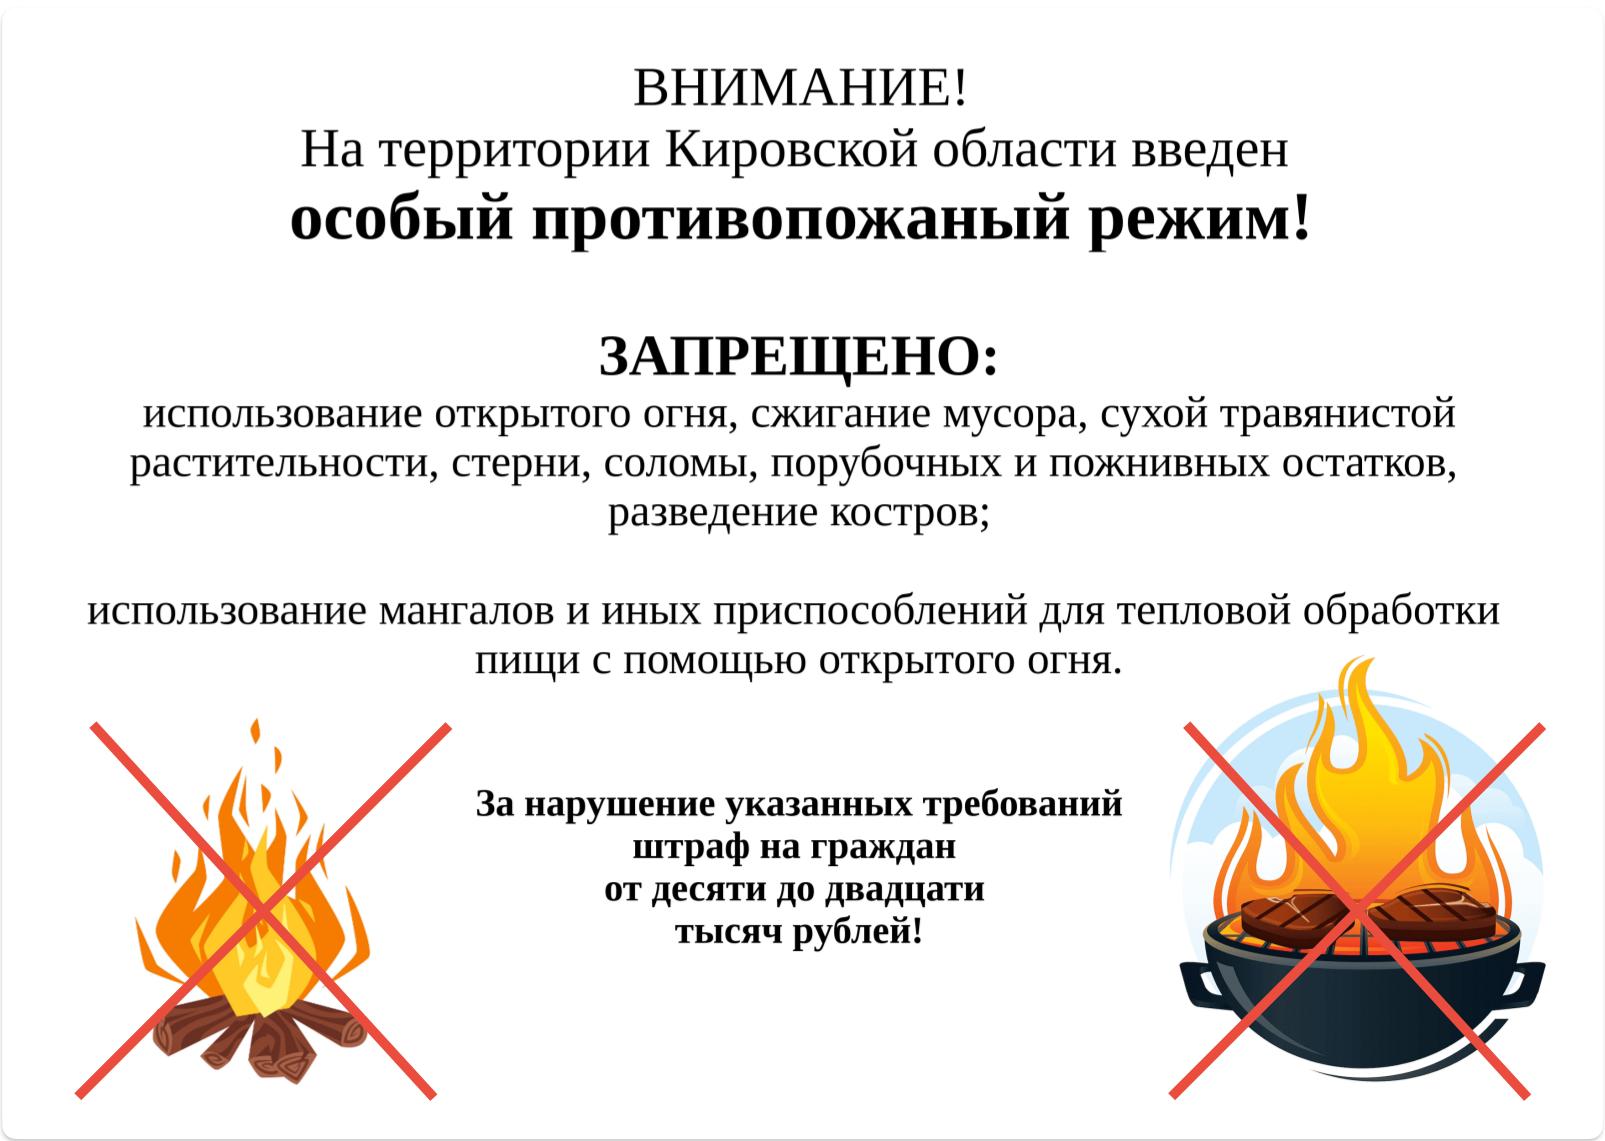 ВНИМАНИЕ!!! На территории Кировской области введен особый противопожарный режим!!!.